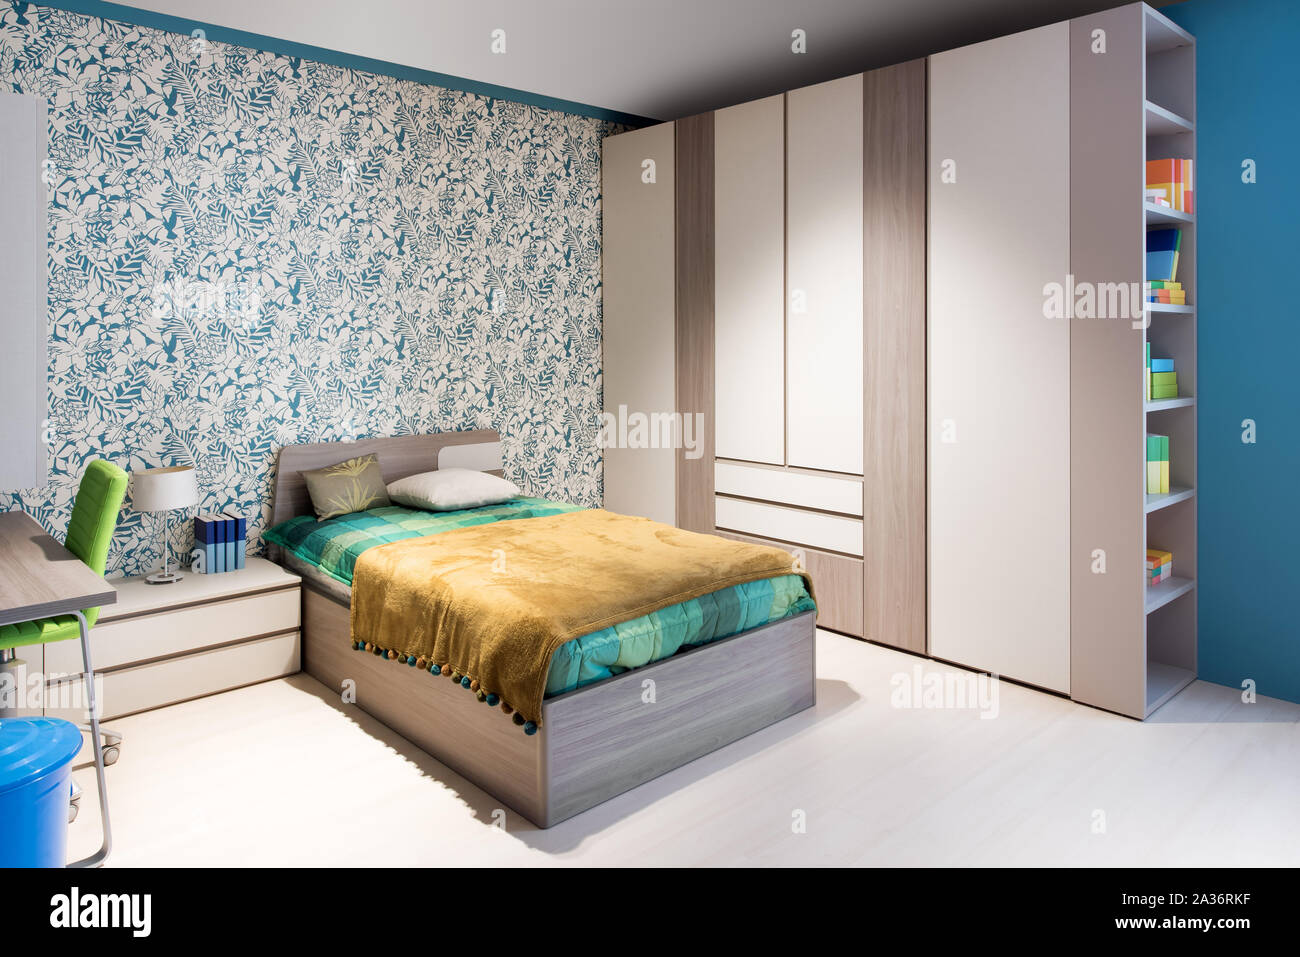 Blau und Grün themed Schlafzimmer Innenraum mit Wand Papier, Holz- Schränke und ein einzelschlafdivan neben einem kleinen Schreibtisch Stockfoto